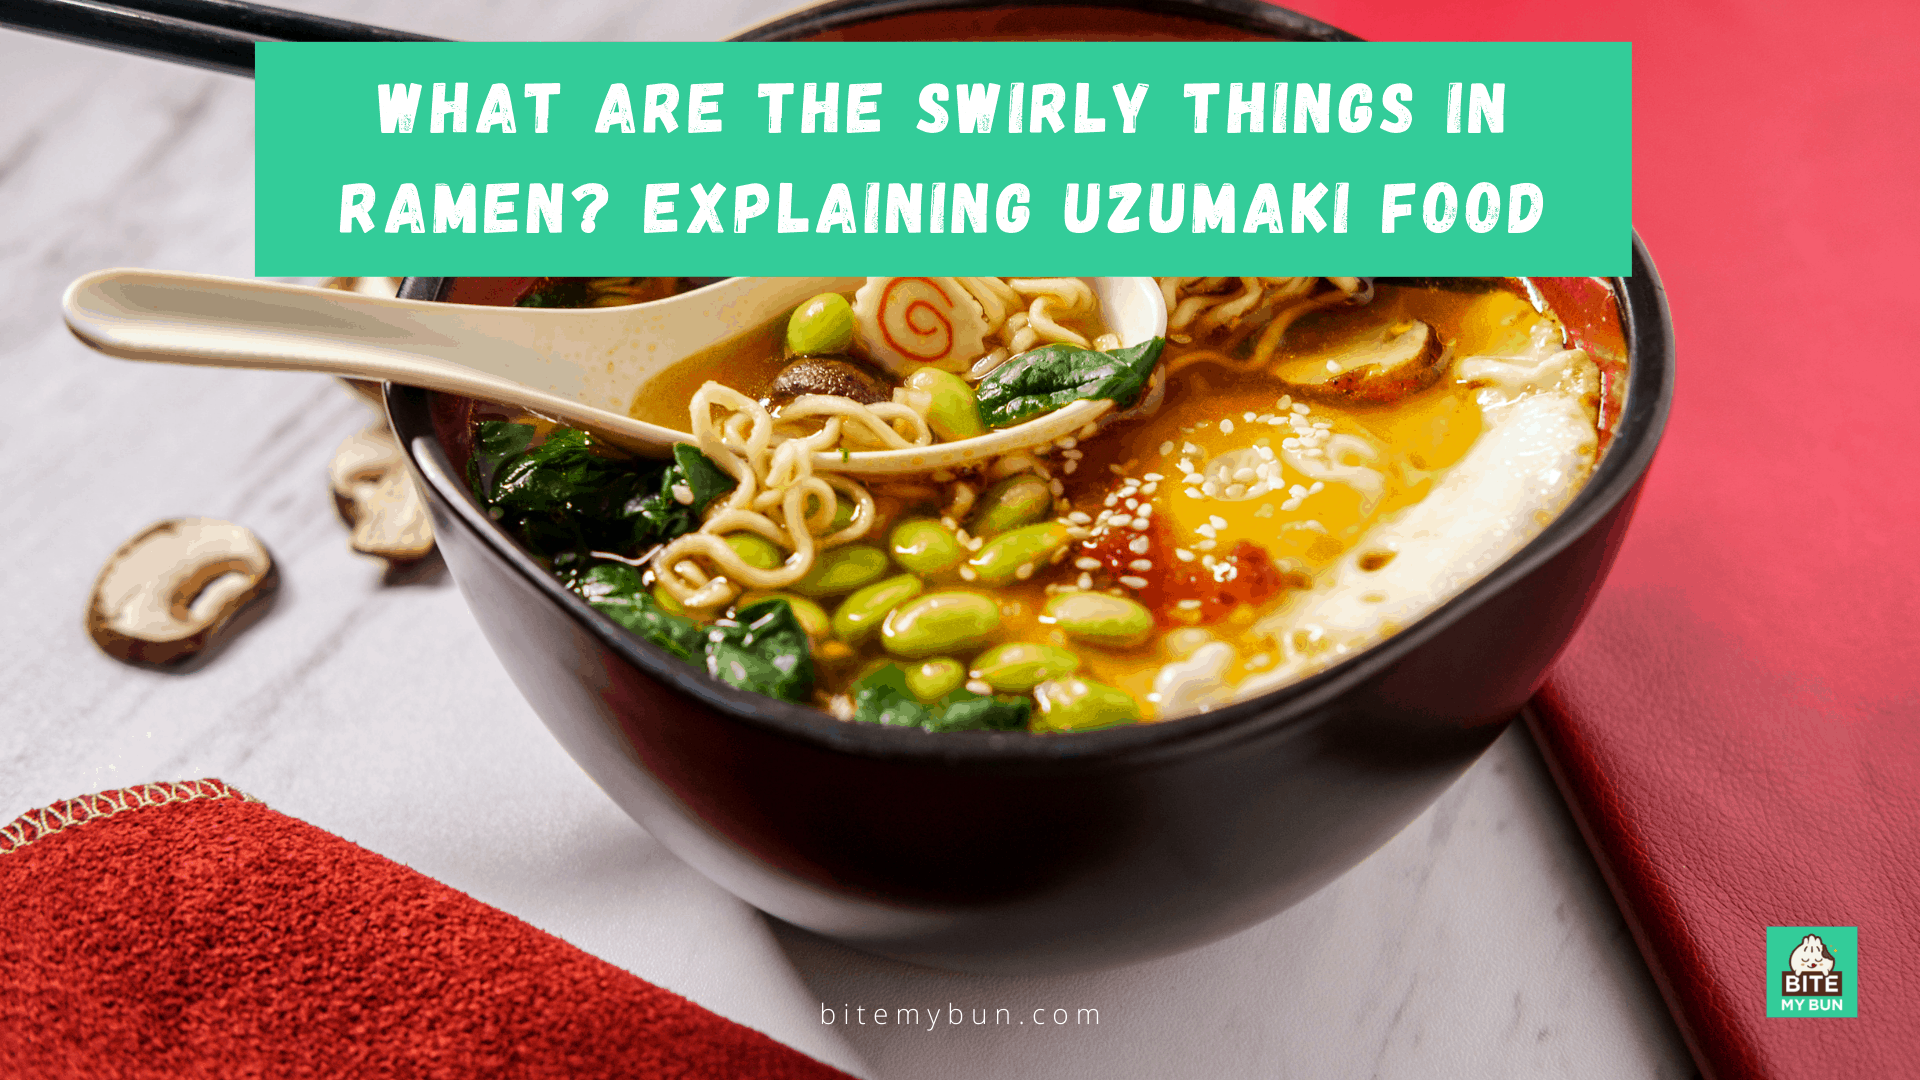 ¿Cuáles son los remolinos del ramen? Explicando la comida Uzumaki